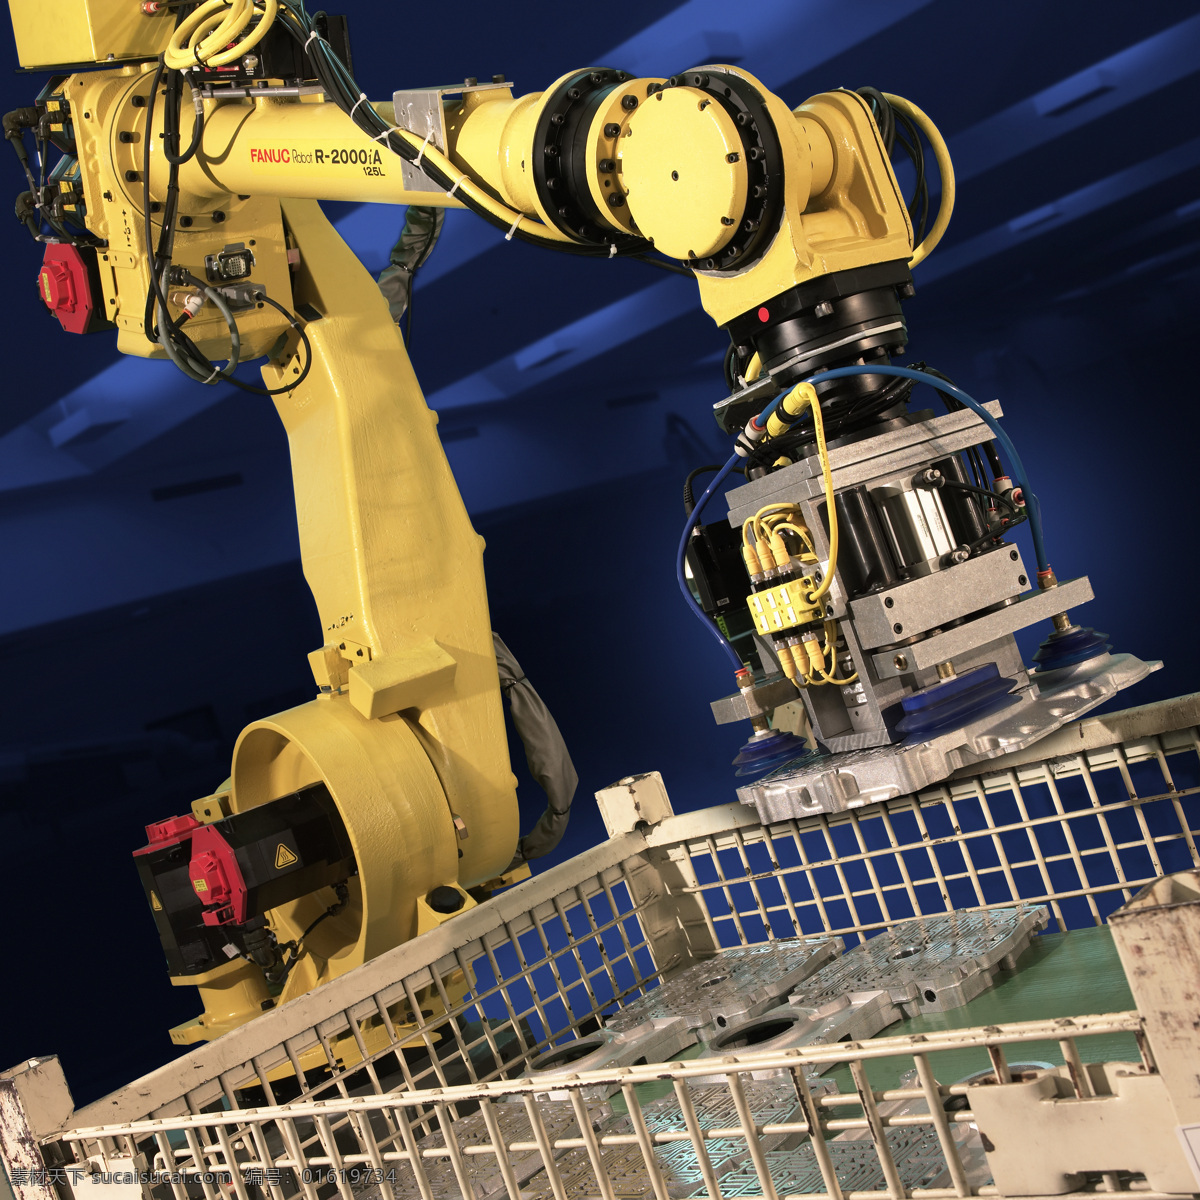 机器人 自动化 视觉系统 机械手臂 机器制造 工业生产 现代科技